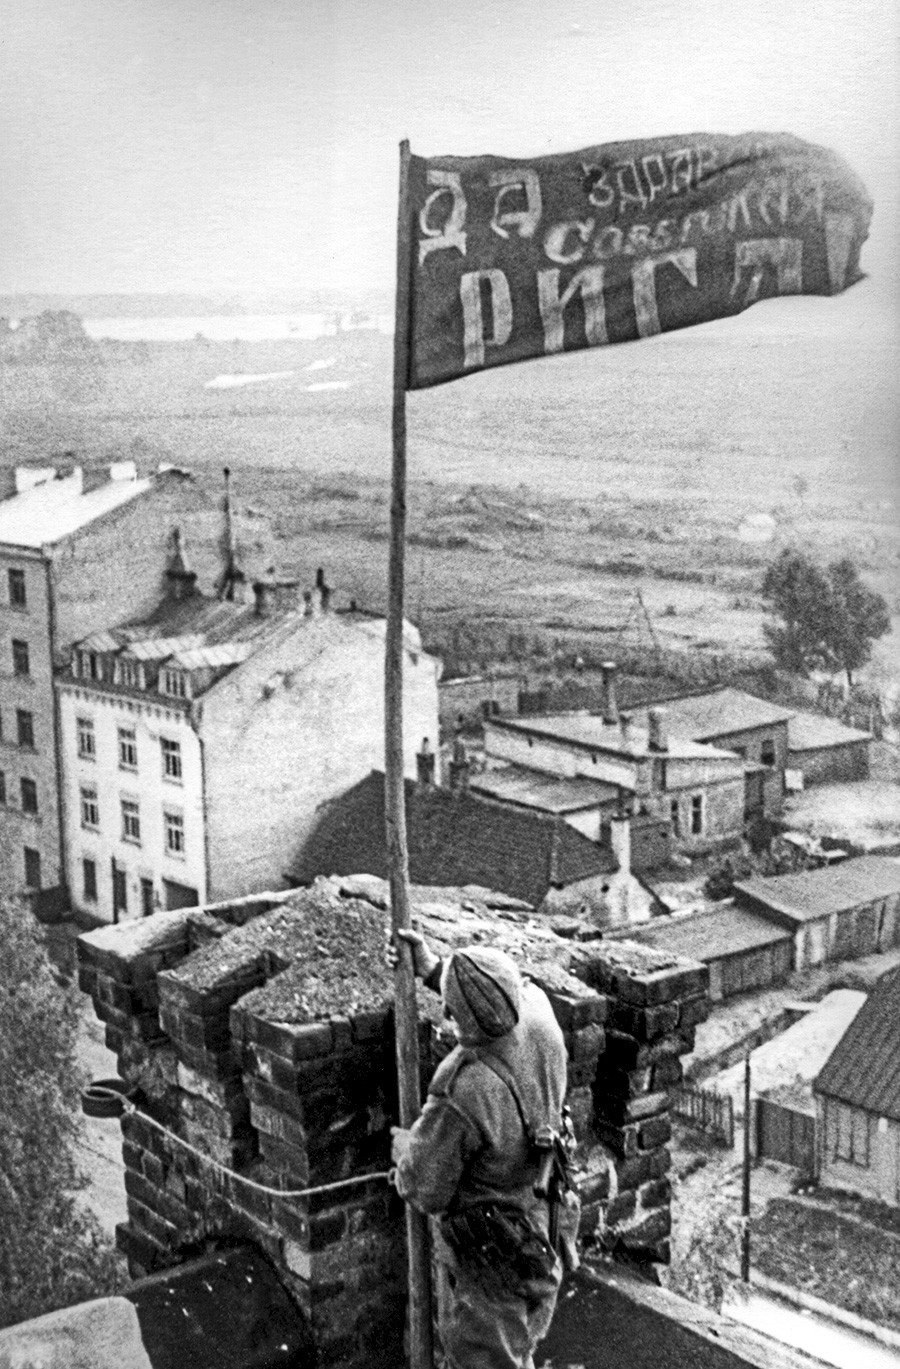 Riga. Lettische SSR. UdSSR. Ein Soldat hisst das Rote Banner über der Stadt, nachdem sie im Zweiten Weltkrieg von den Nazi-Invasoren befreit wurde.